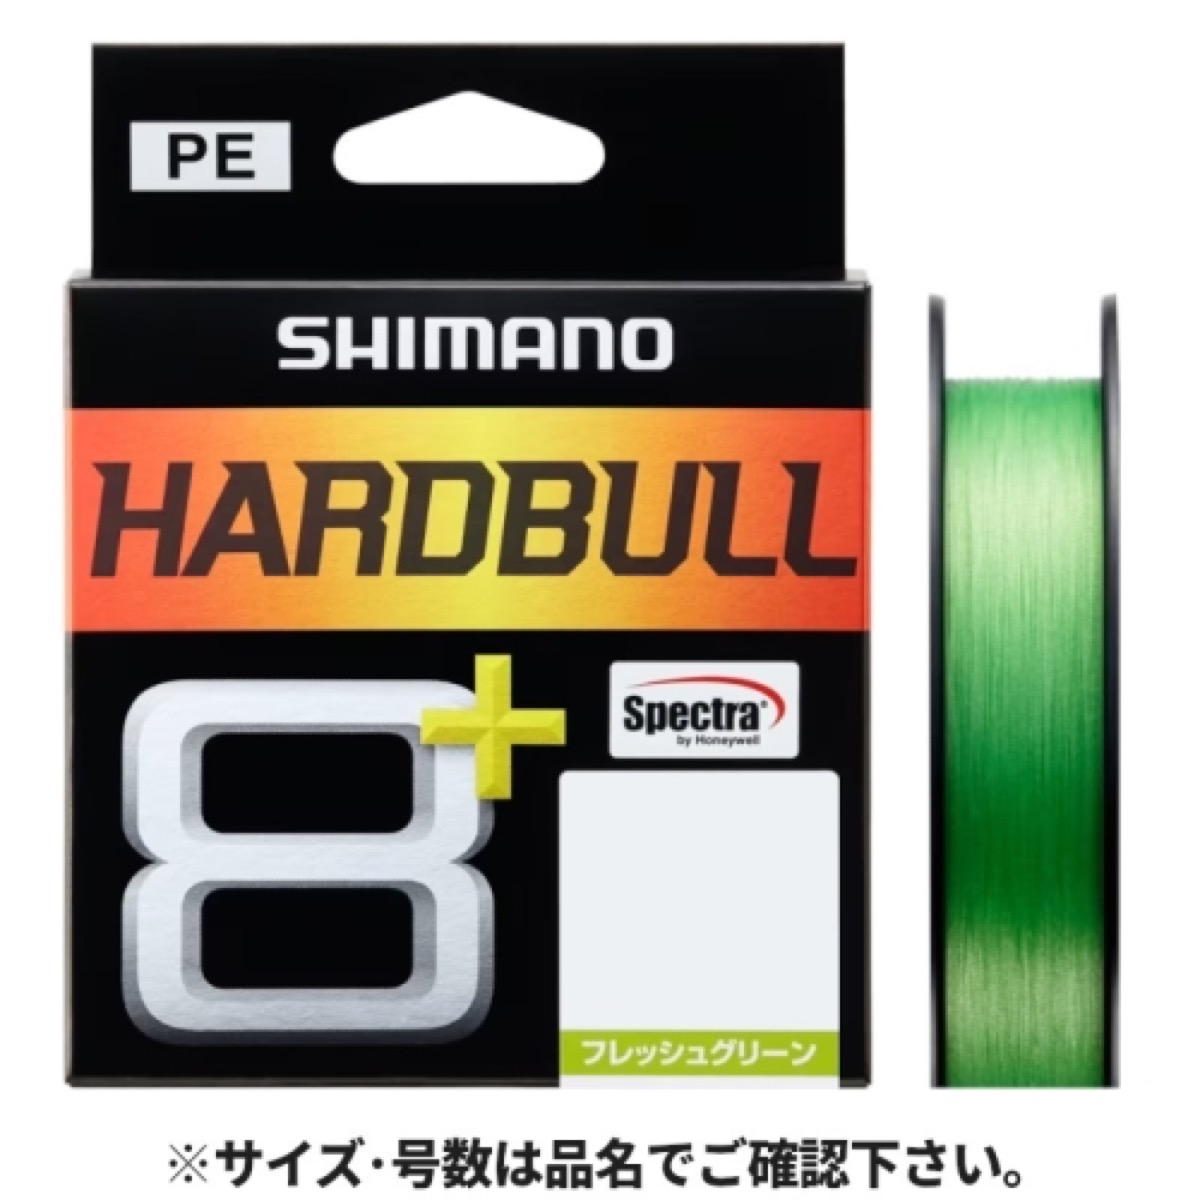 シマノ(SHIMANO) ハードブル 8+ 150m 1.5号 フレッシュグリーン LD-M58X ネコポス(メール便)対象商品